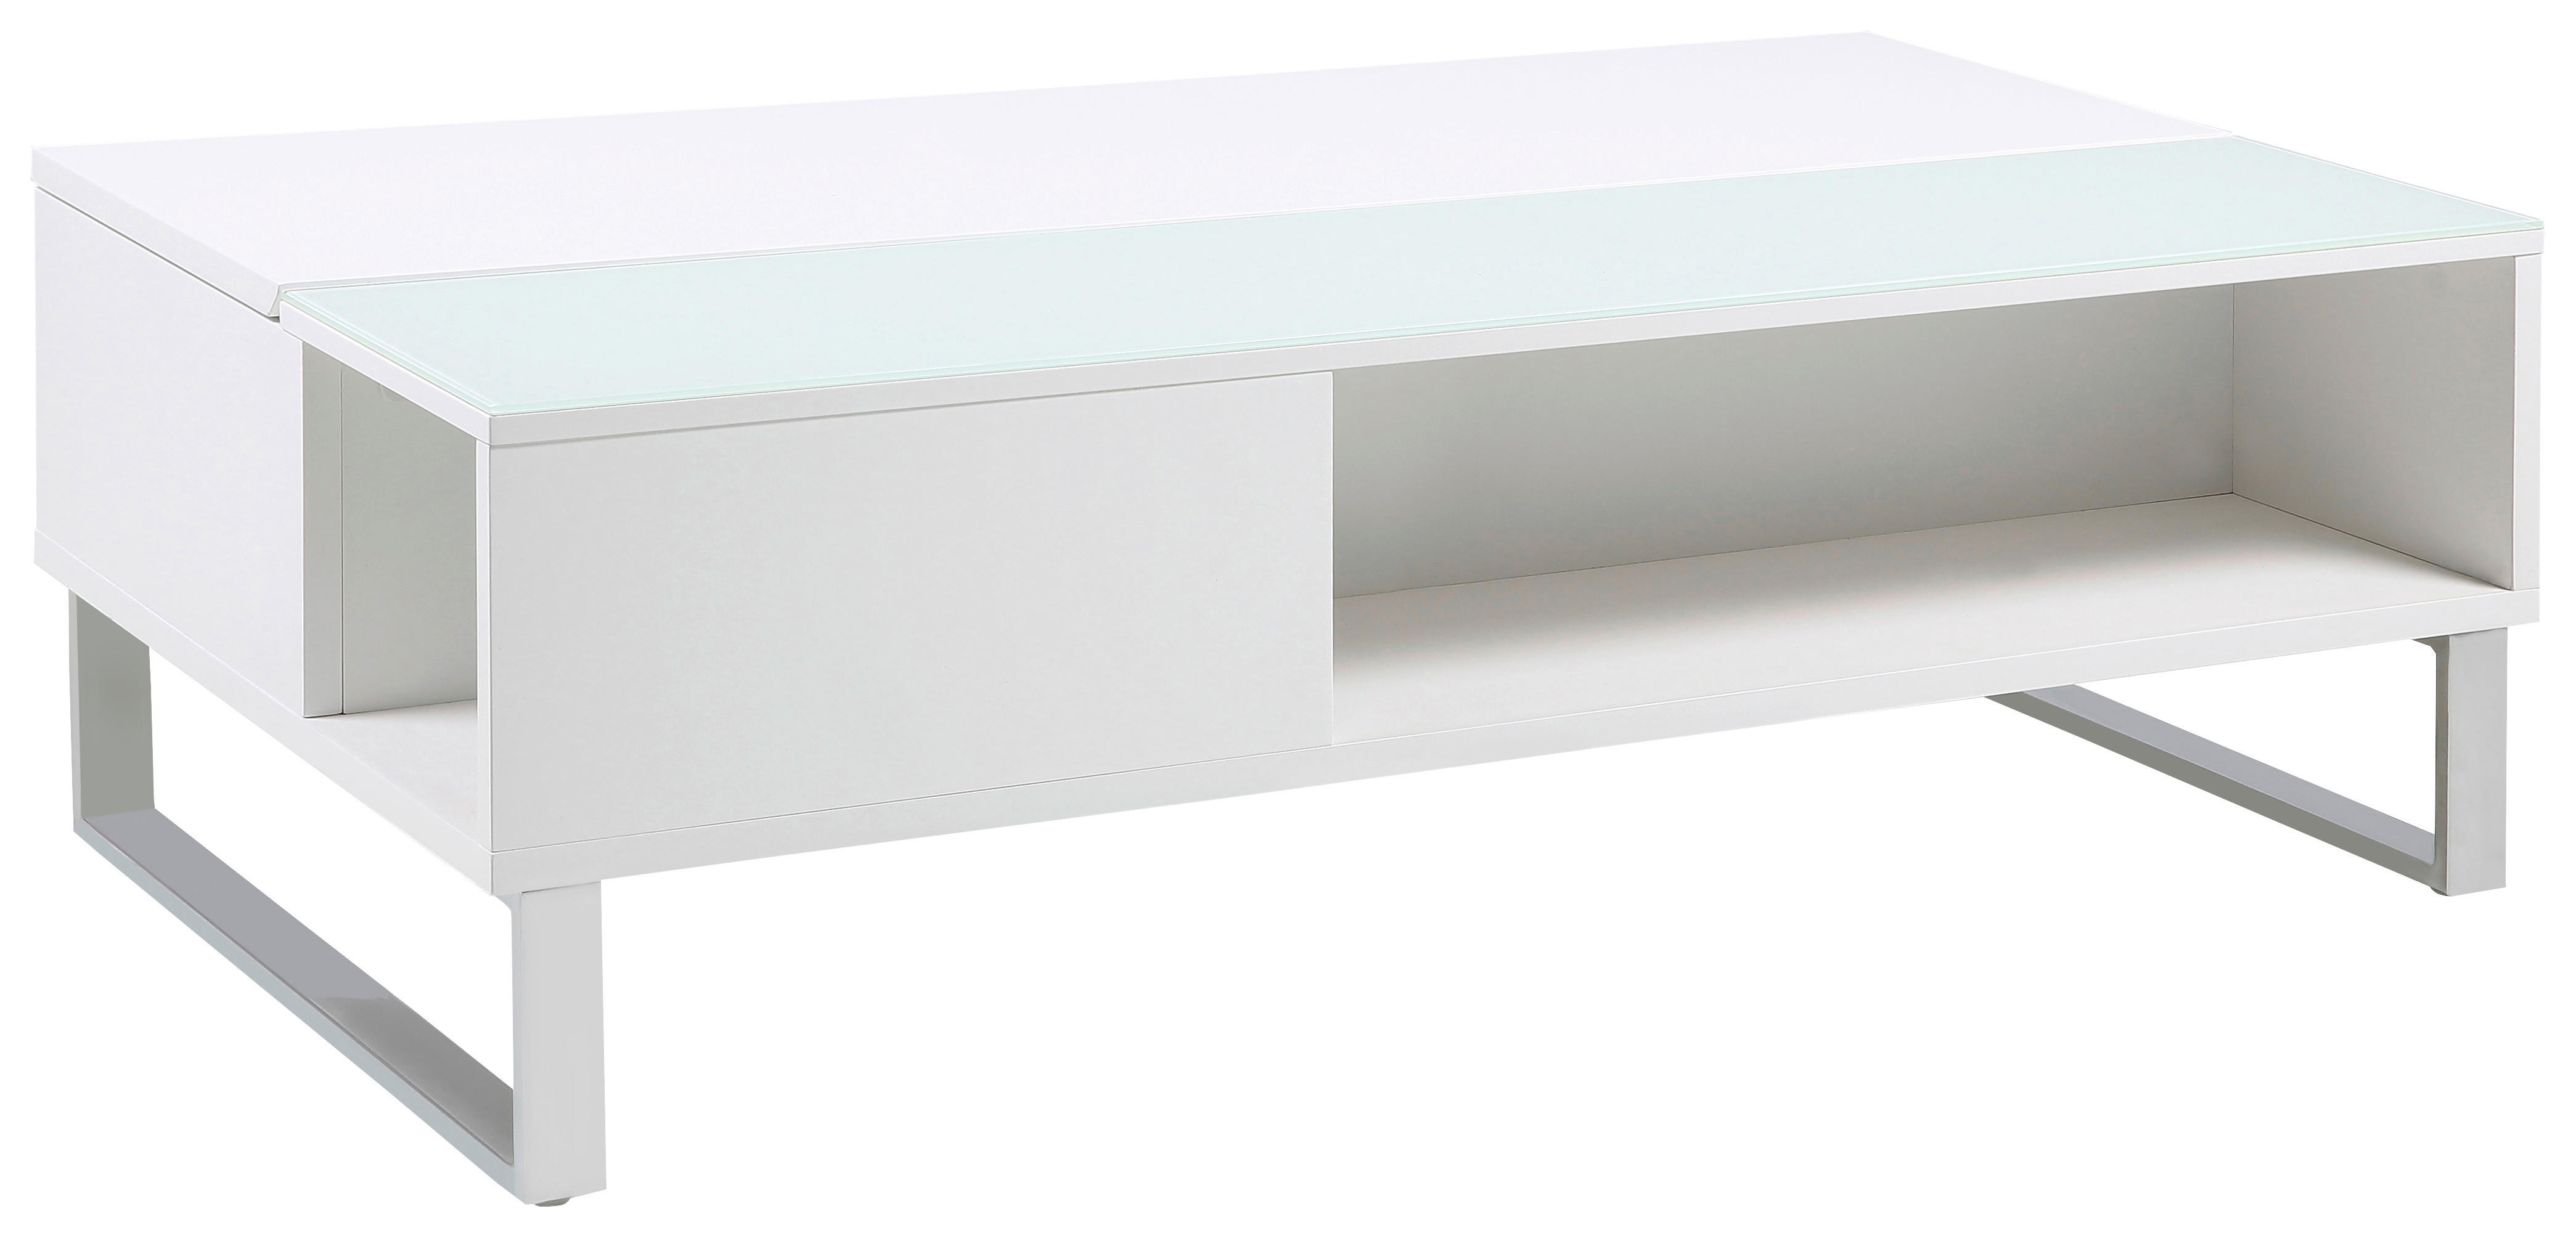 COUCHTISCH rechteckig Weiß, Alufarben  - Alufarben/Weiß, Design, Glas/Metall (110/60/35cm) - Livetastic